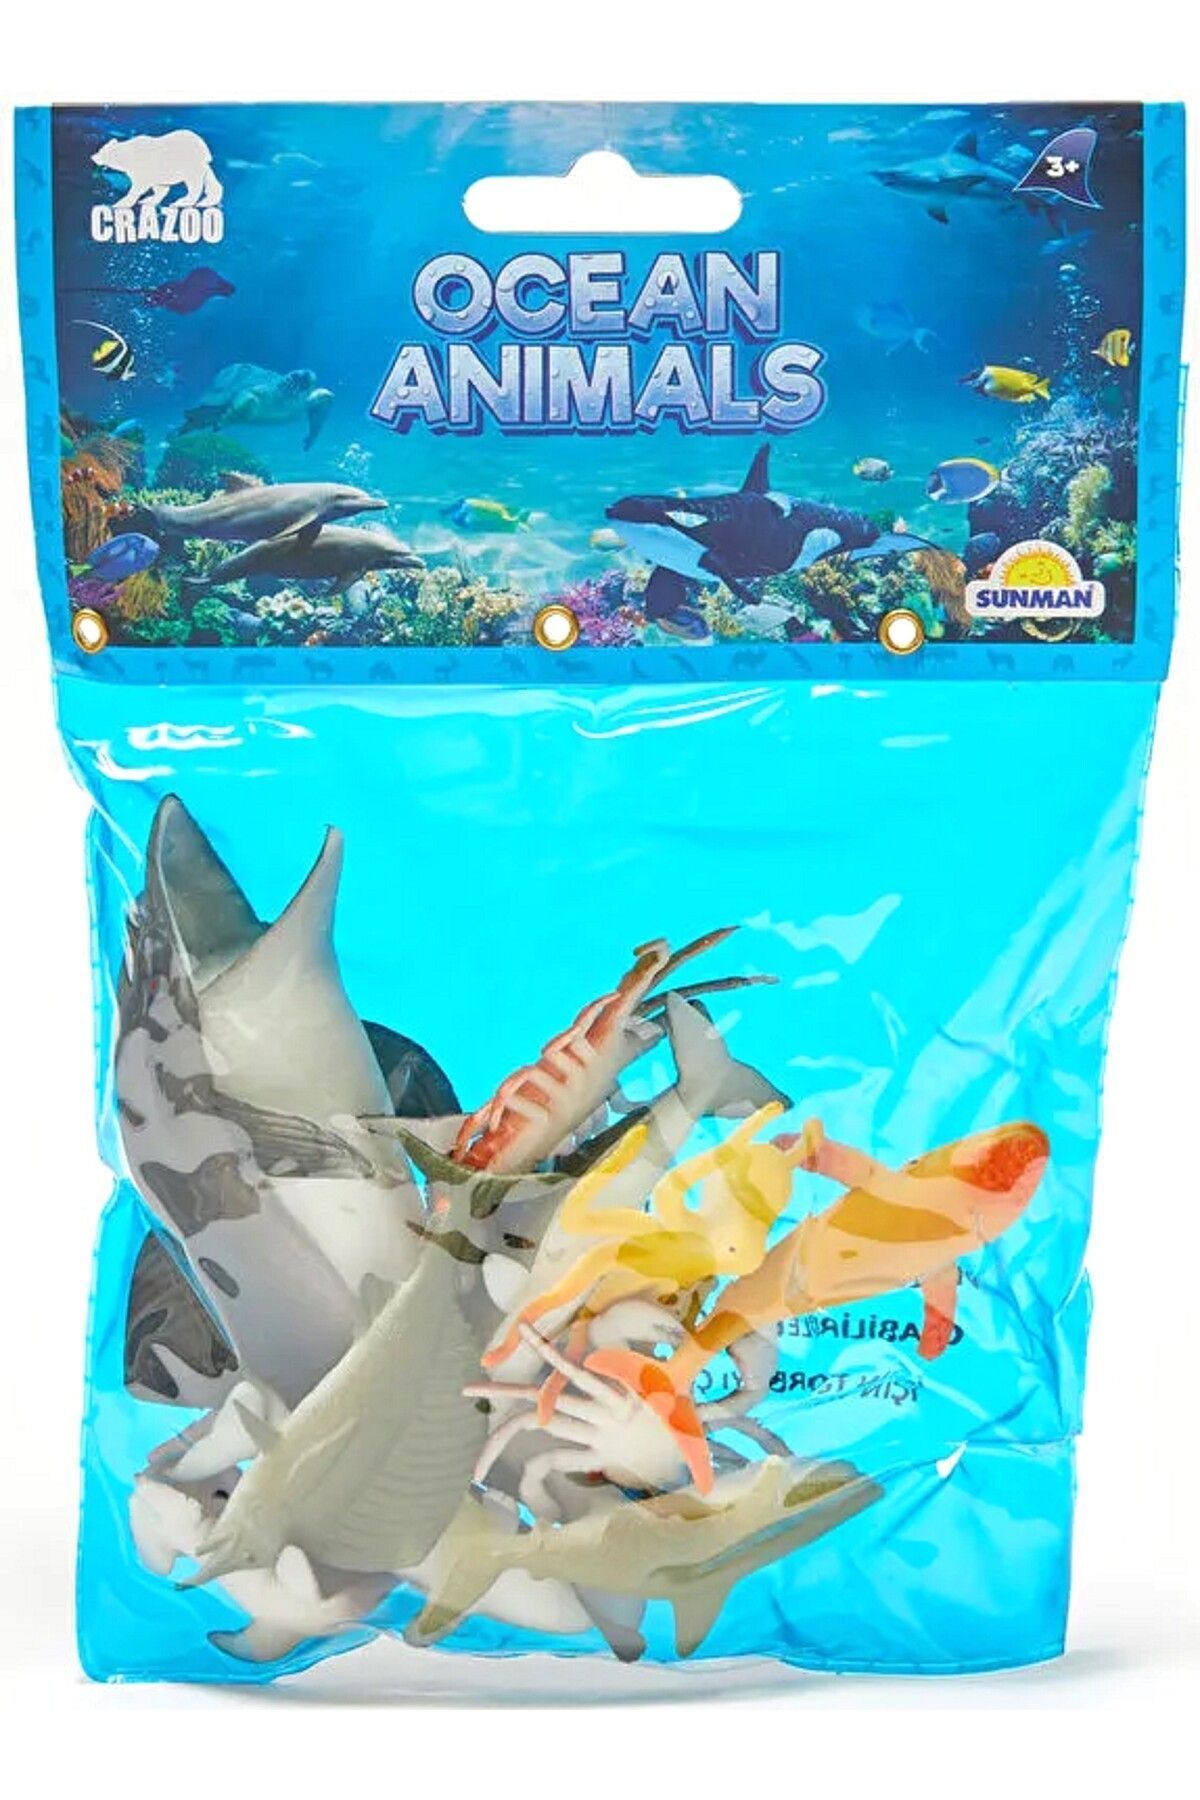 Sunman crazoo okyanus hayvanları set deniz hayvanı oyuncak hayvan seti yunus köpek balığı ahtapot balık fok